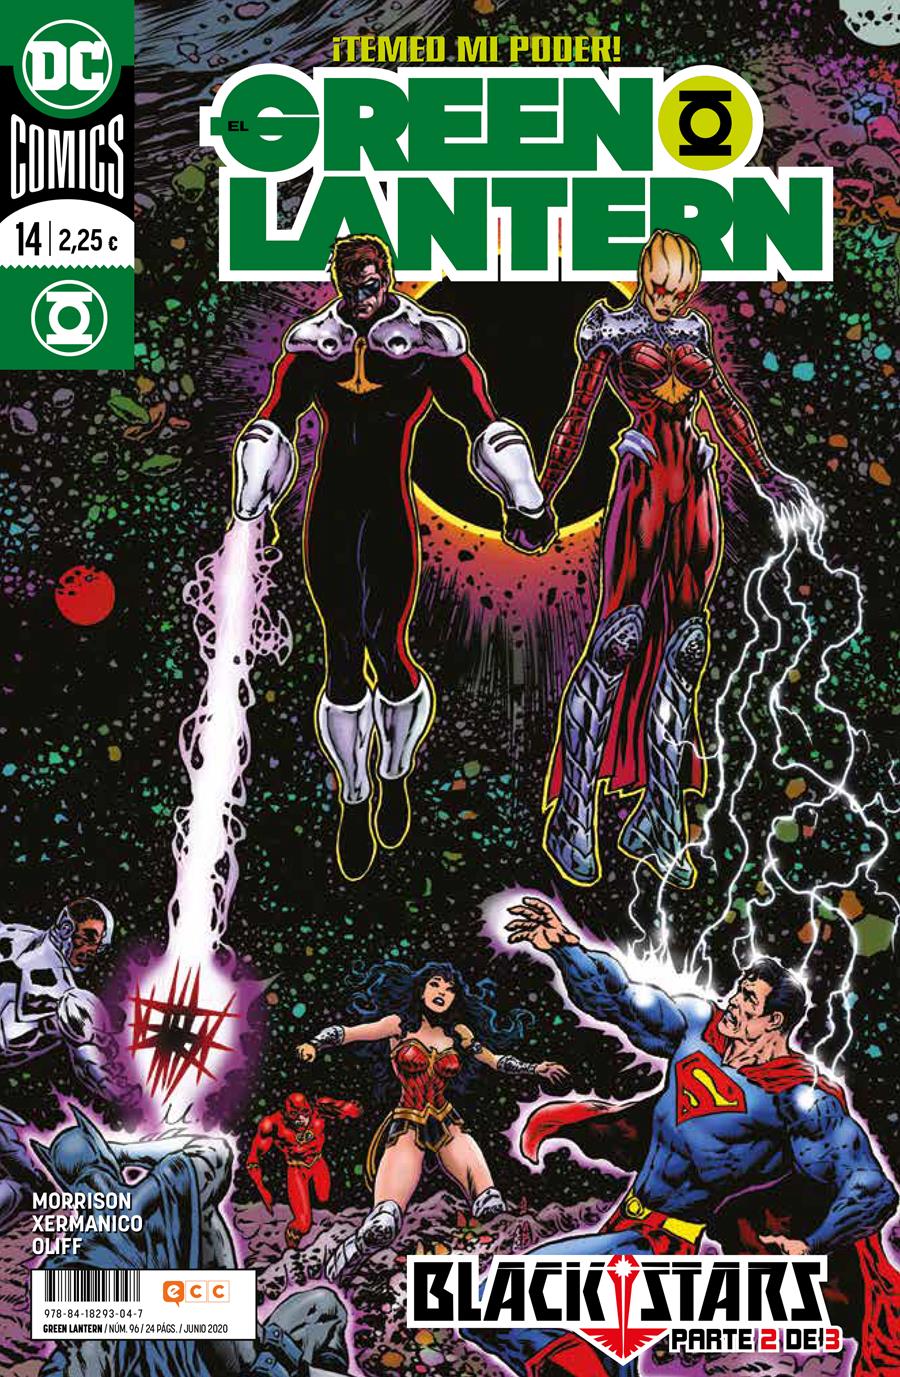 El Green Lantern núm. 96/ 14 | N0720-ECC34 | Grant Morrison / Xermanico | Terra de Còmic - Tu tienda de cómics online especializada en cómics, manga y merchandising